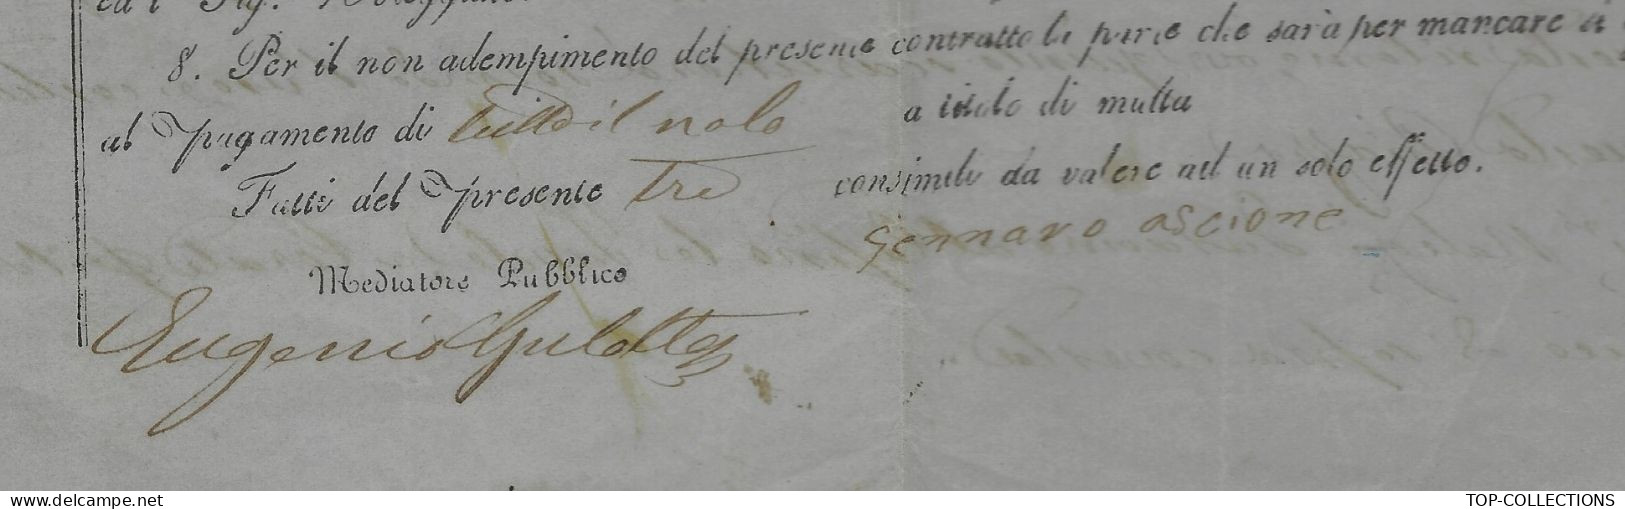 NAVIGATION ITALIE Parleme 1860  RARE CONTRAT D’ AFFRETEMENT CONTRATTO DI NOLEGGIO Pour Porto Palo Sicile - Italy